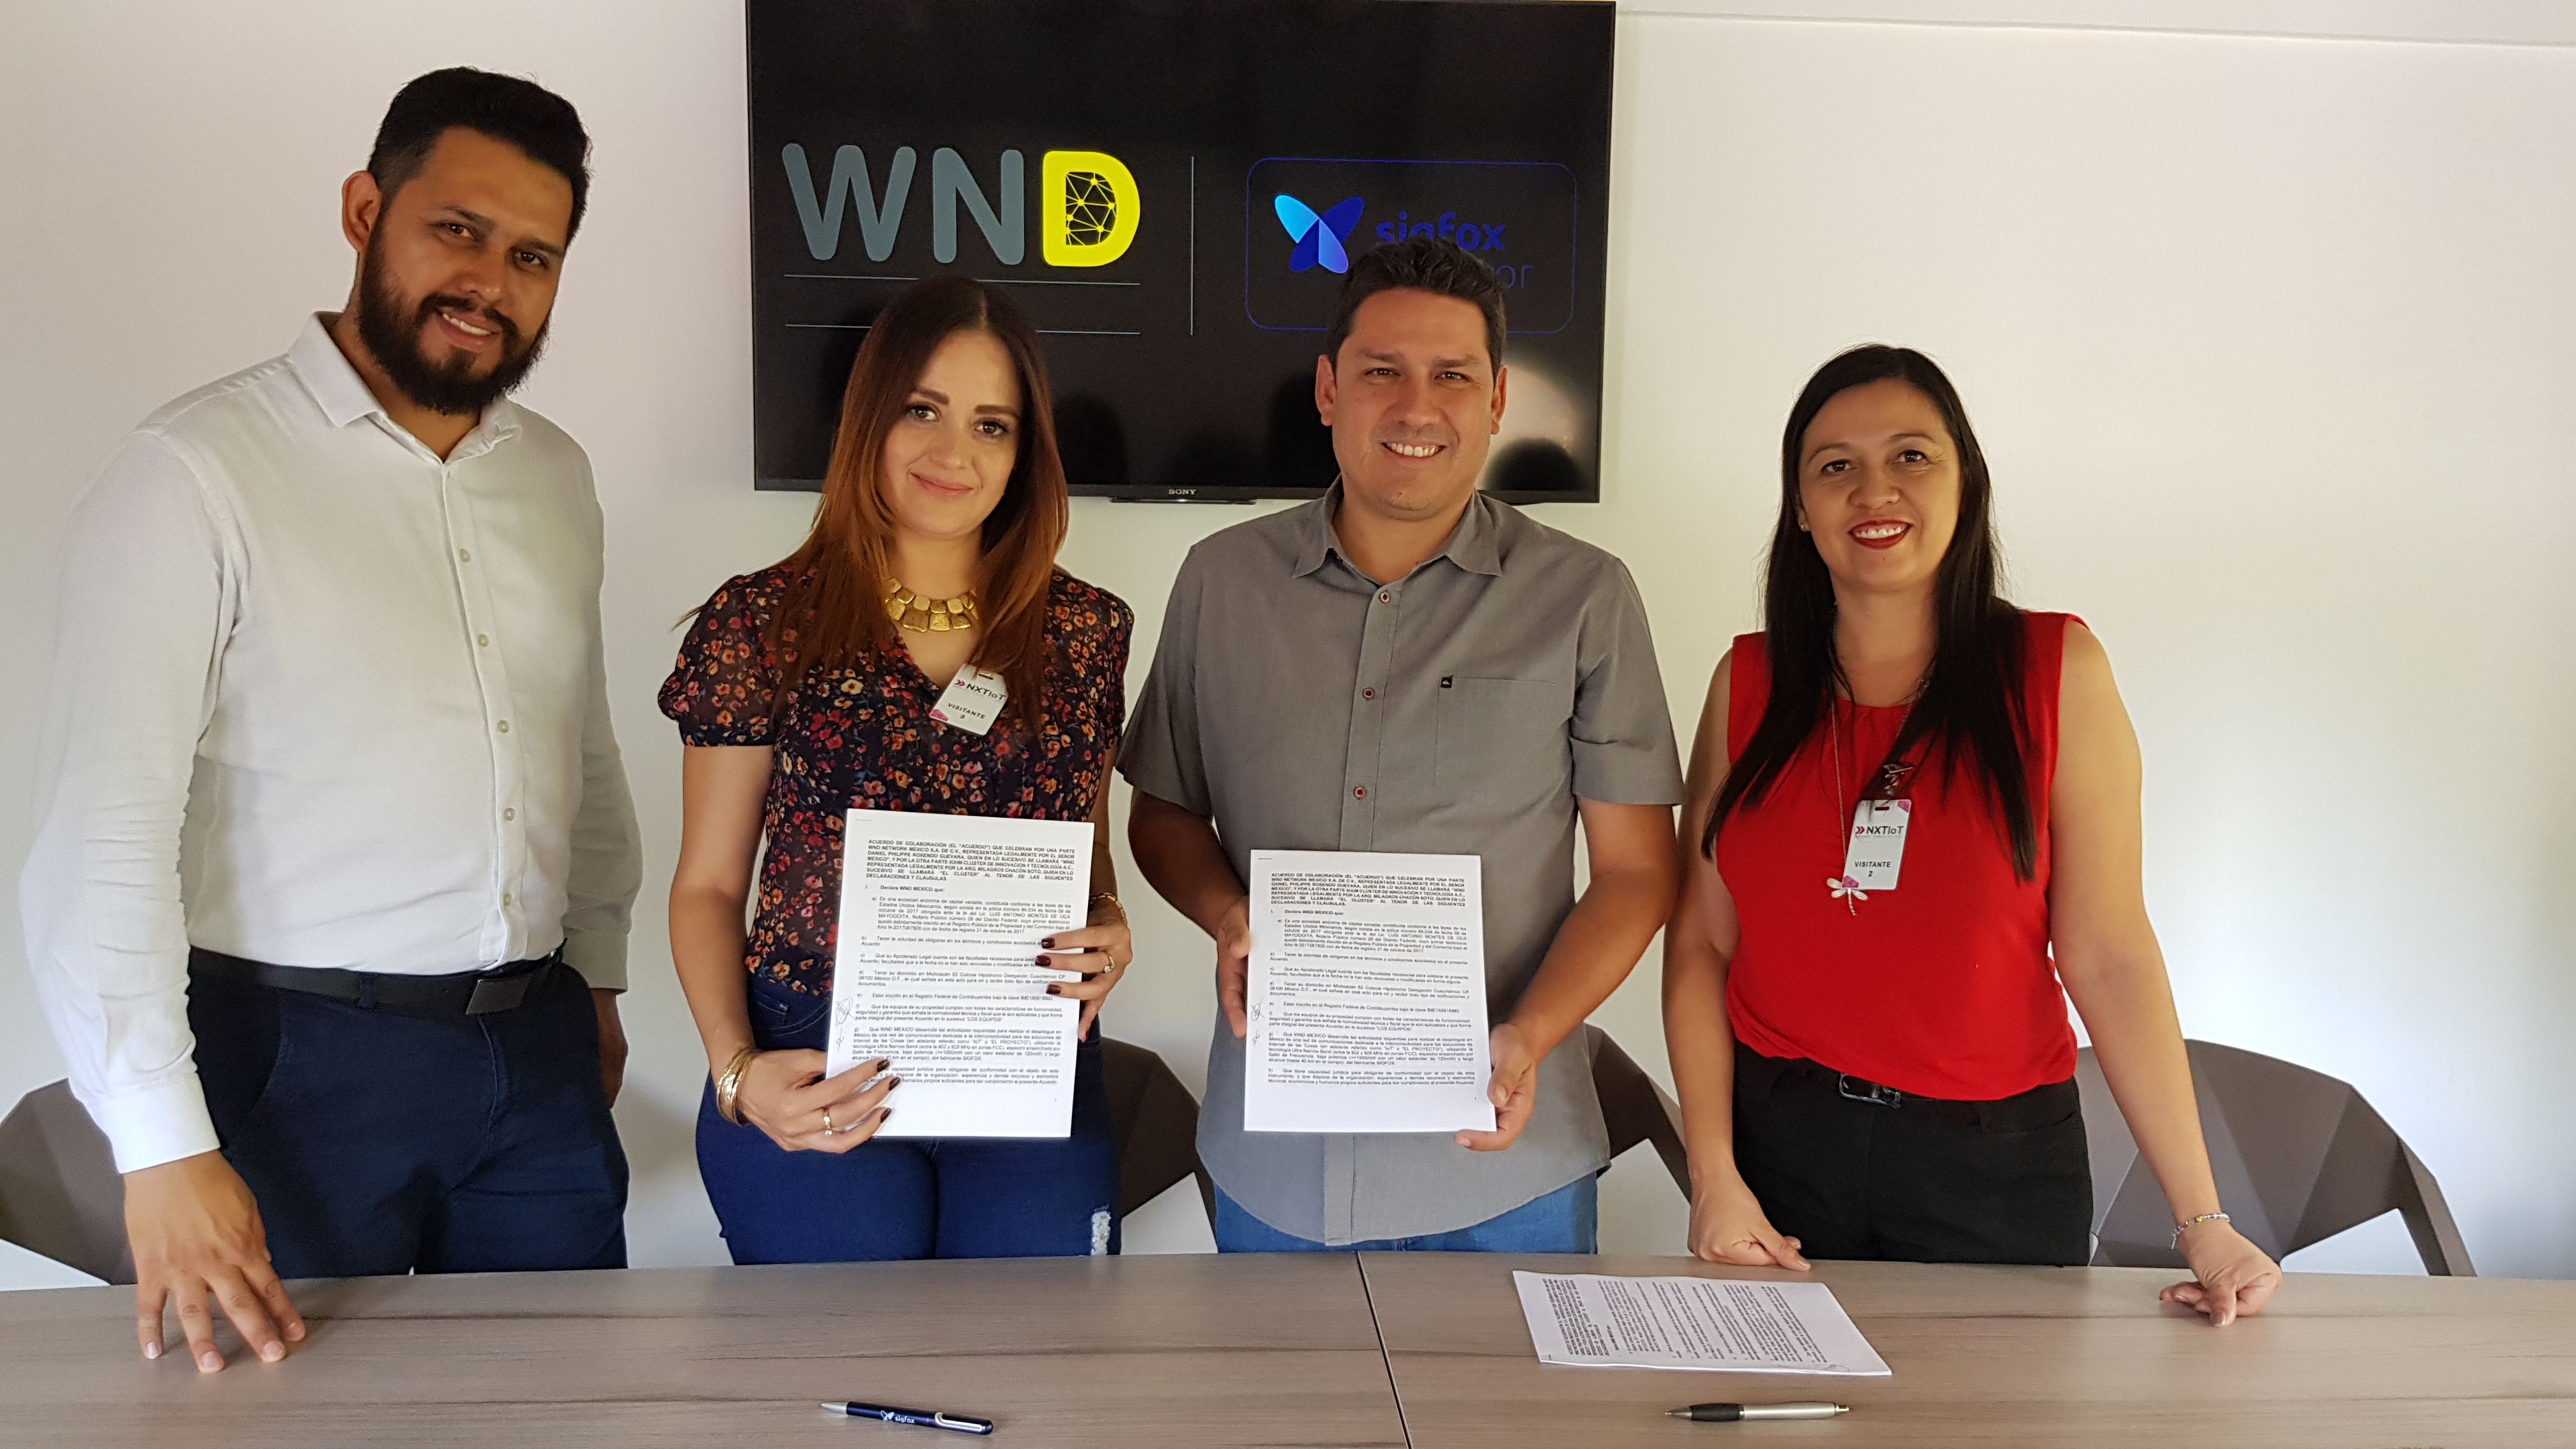 ¡@WND México firma convenio con el Cluster de innovación y tecnología de Durango!